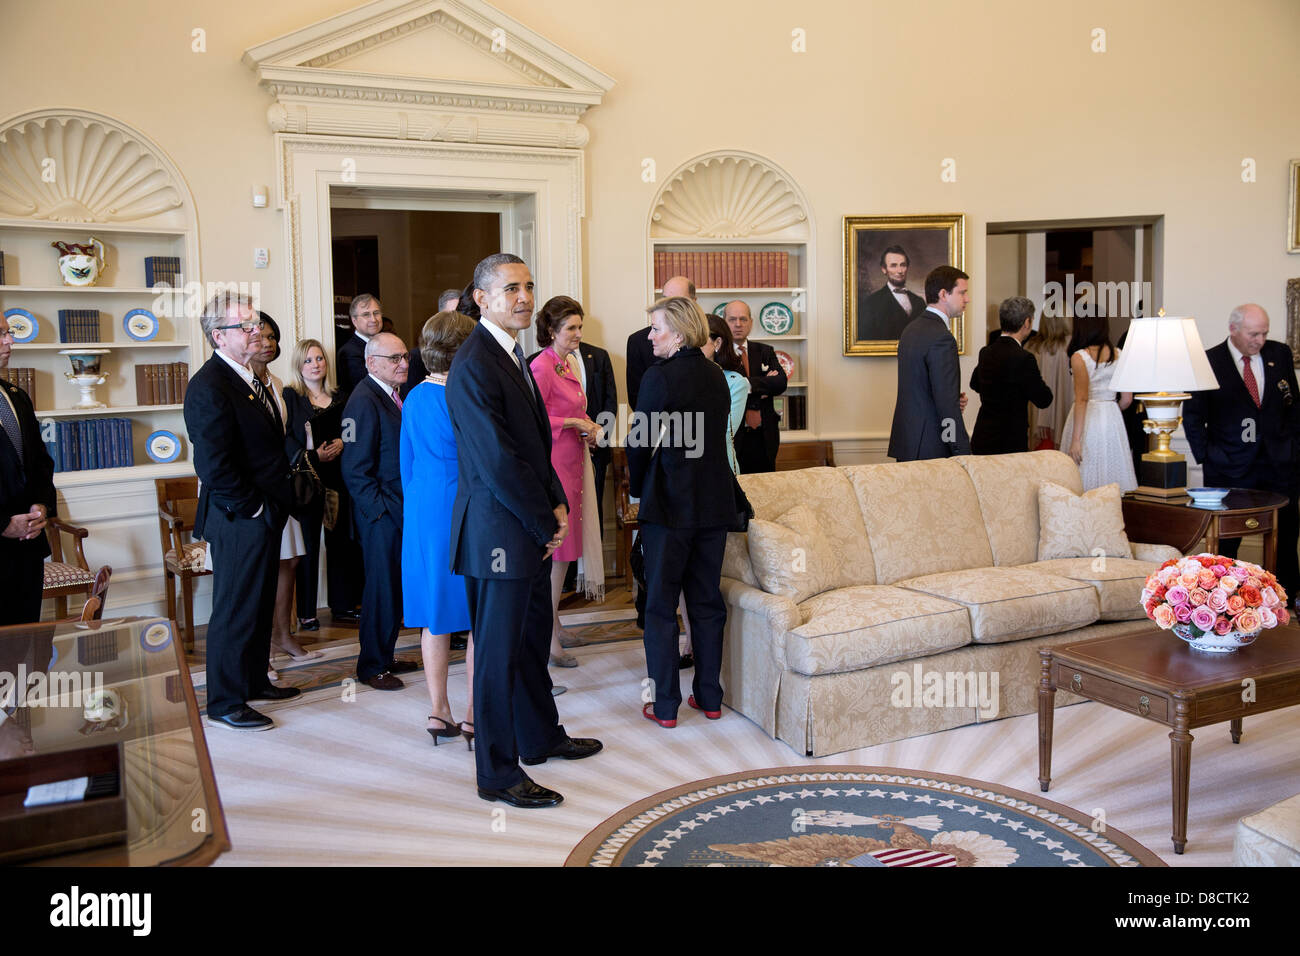 El presidente estadounidense, Barack Obama, pausas en una réplica de la Oficina Oval durante un recorrido por la biblioteca presidencial George W. Bush y el museo en el campus de la Universidad Metodista del Sur, el 25 de abril de 2013 en Dallas, Texas. Foto de stock